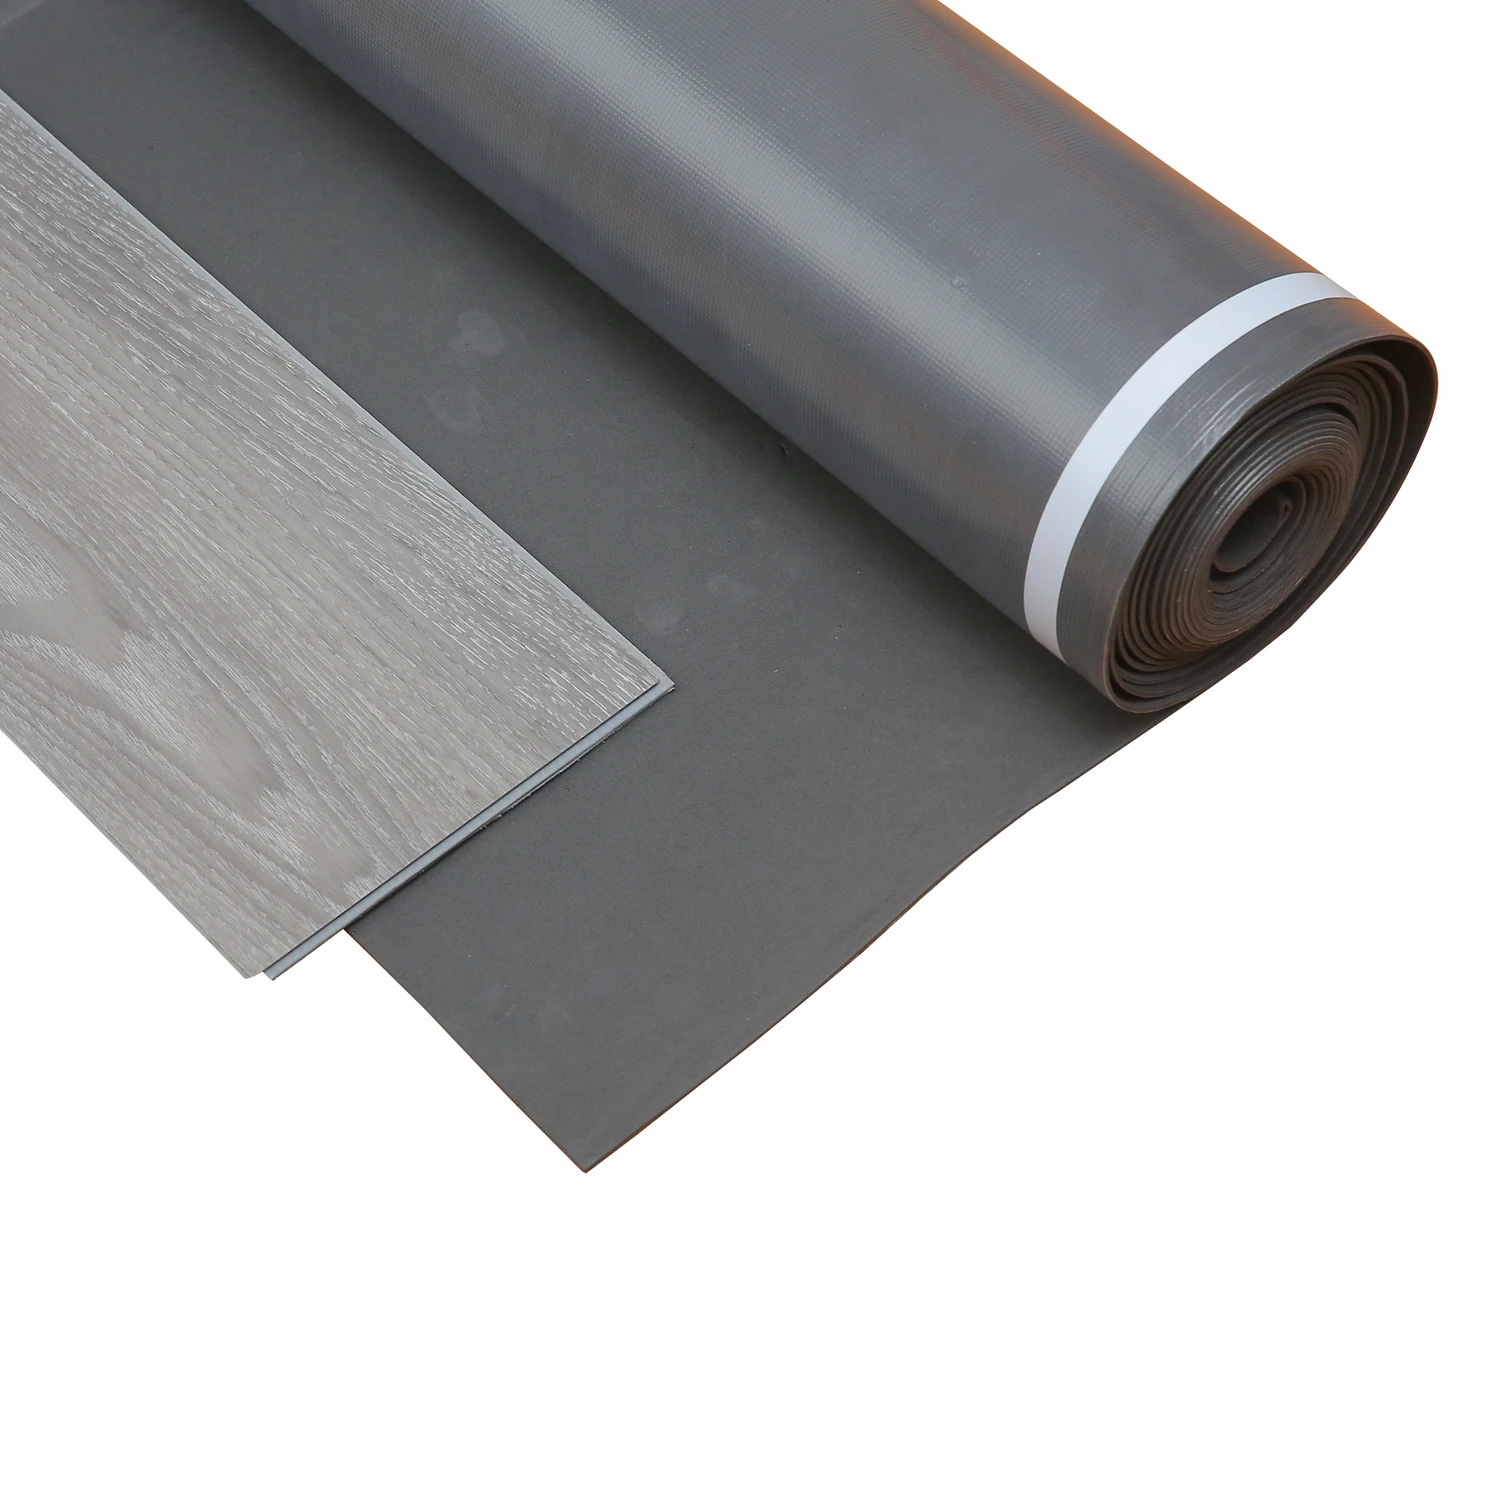 Silver Eva Foam Protective Floor Covering Underlayment Buy